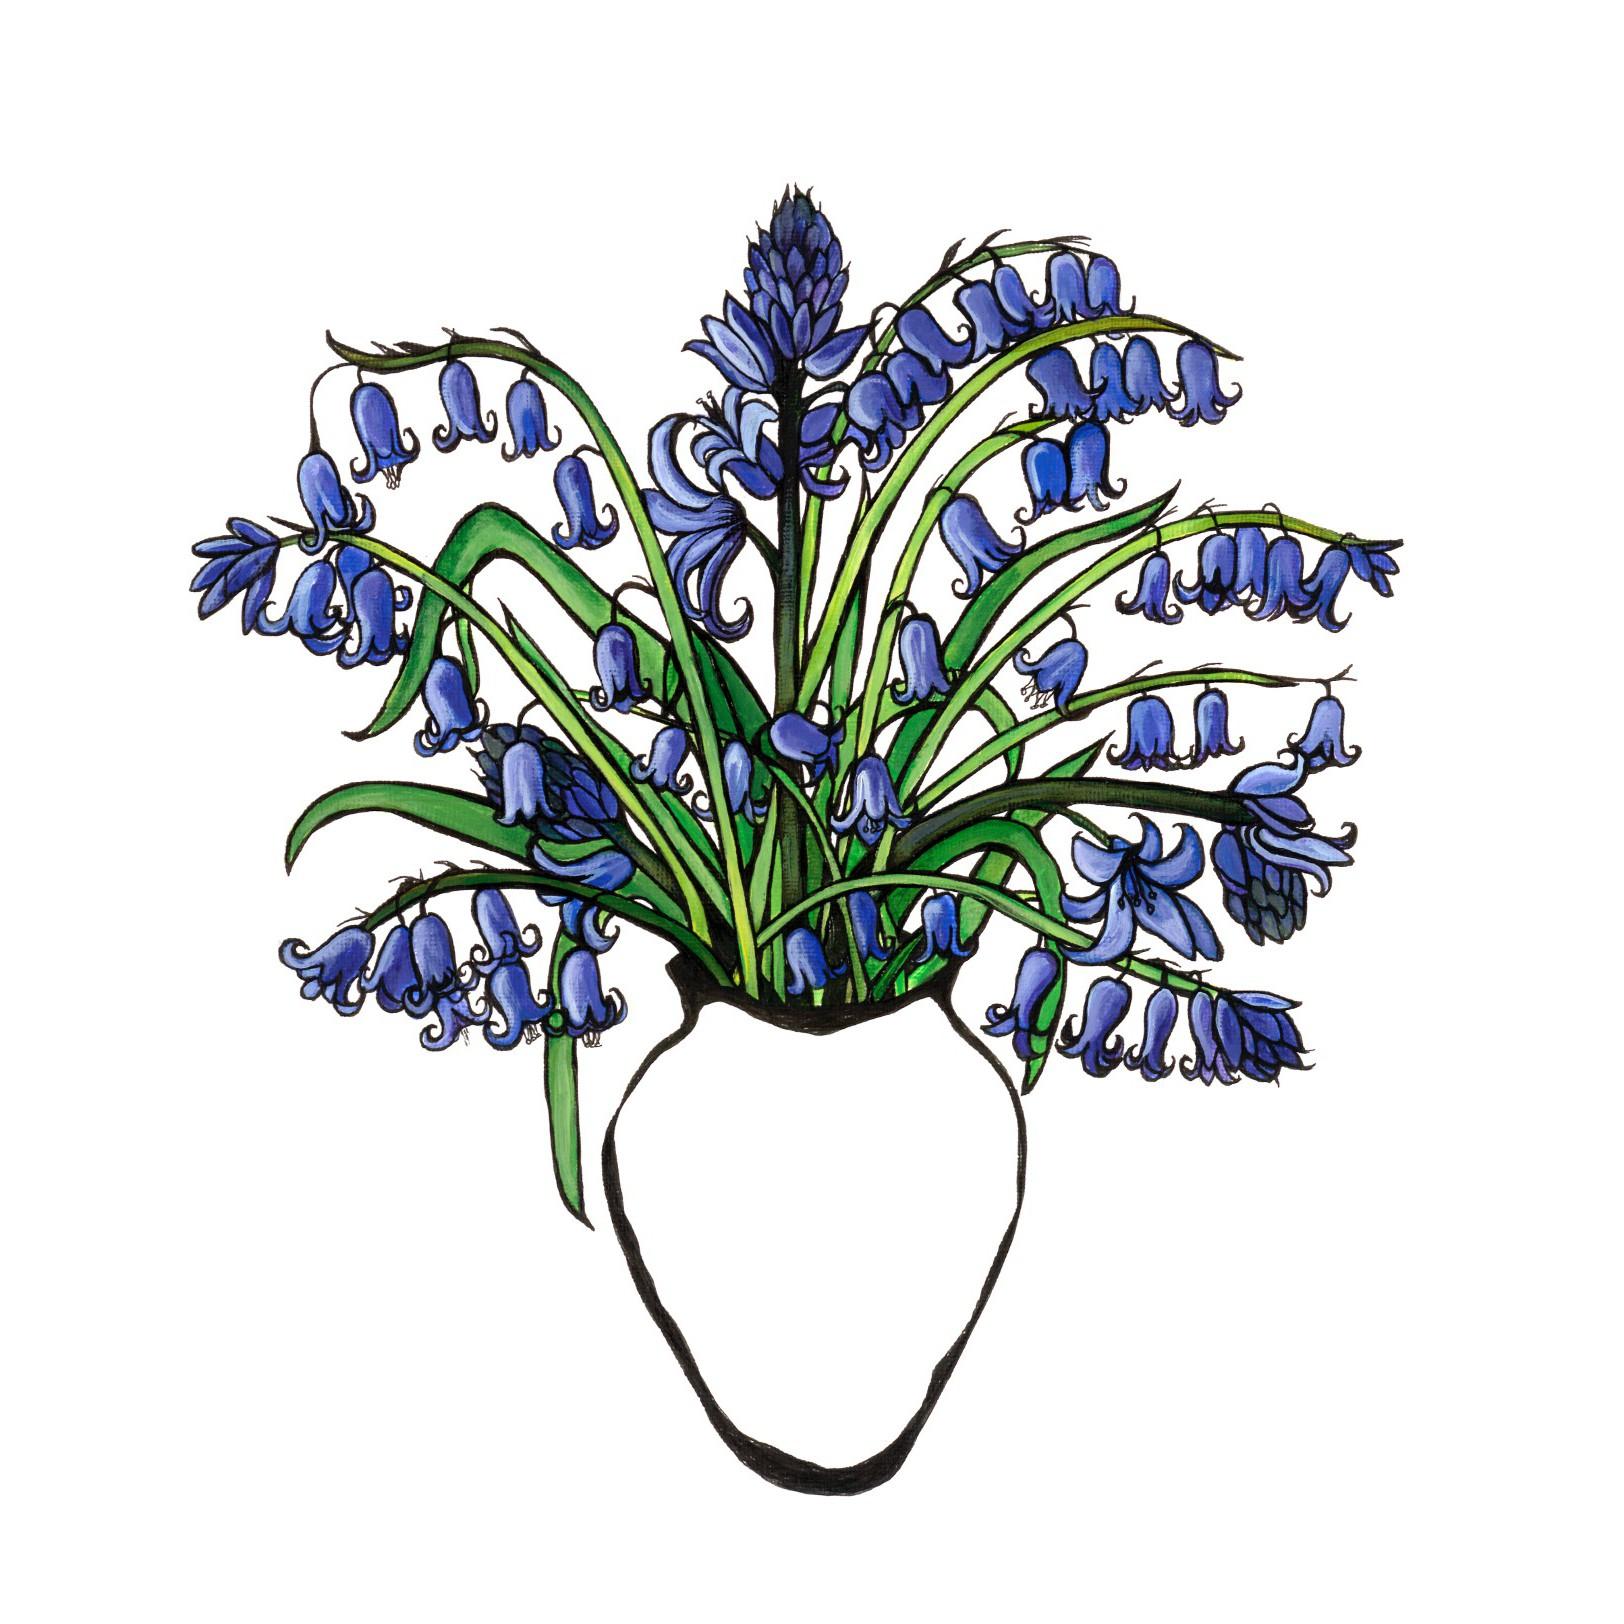 Diptychon über Glockenblumen und Schneeglöckchen
Gesamtgröße der Platte: H80 x B80

Lucy Routh - Blauglocken
Inspiriert von der Natur und der Schönheit alltäglicher Gegenstände. Ich kombiniere traditionelle Stillleben mit einem zeitgenössischen Stil